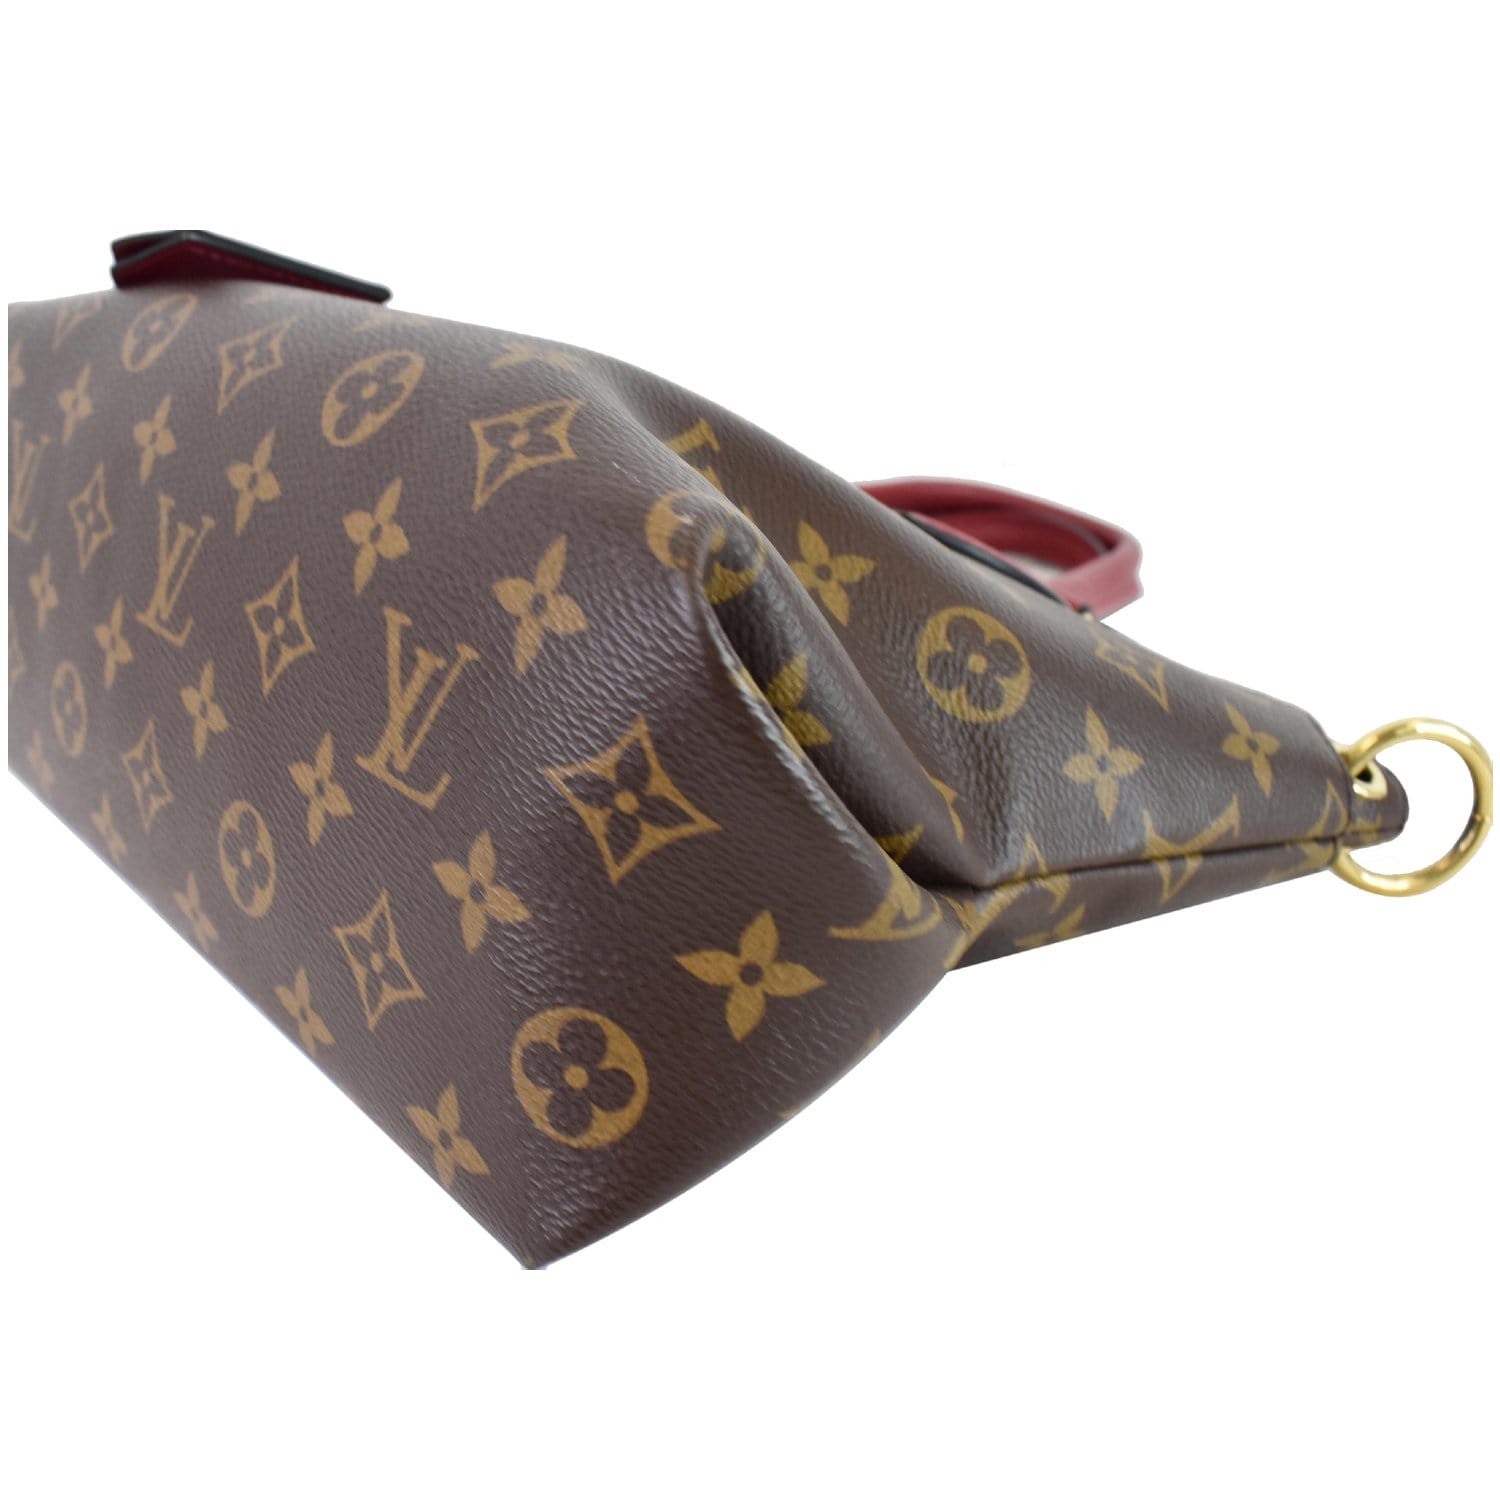 🎁Designer Louis Vuitton Paper Shopping Gift Bag Size Medium